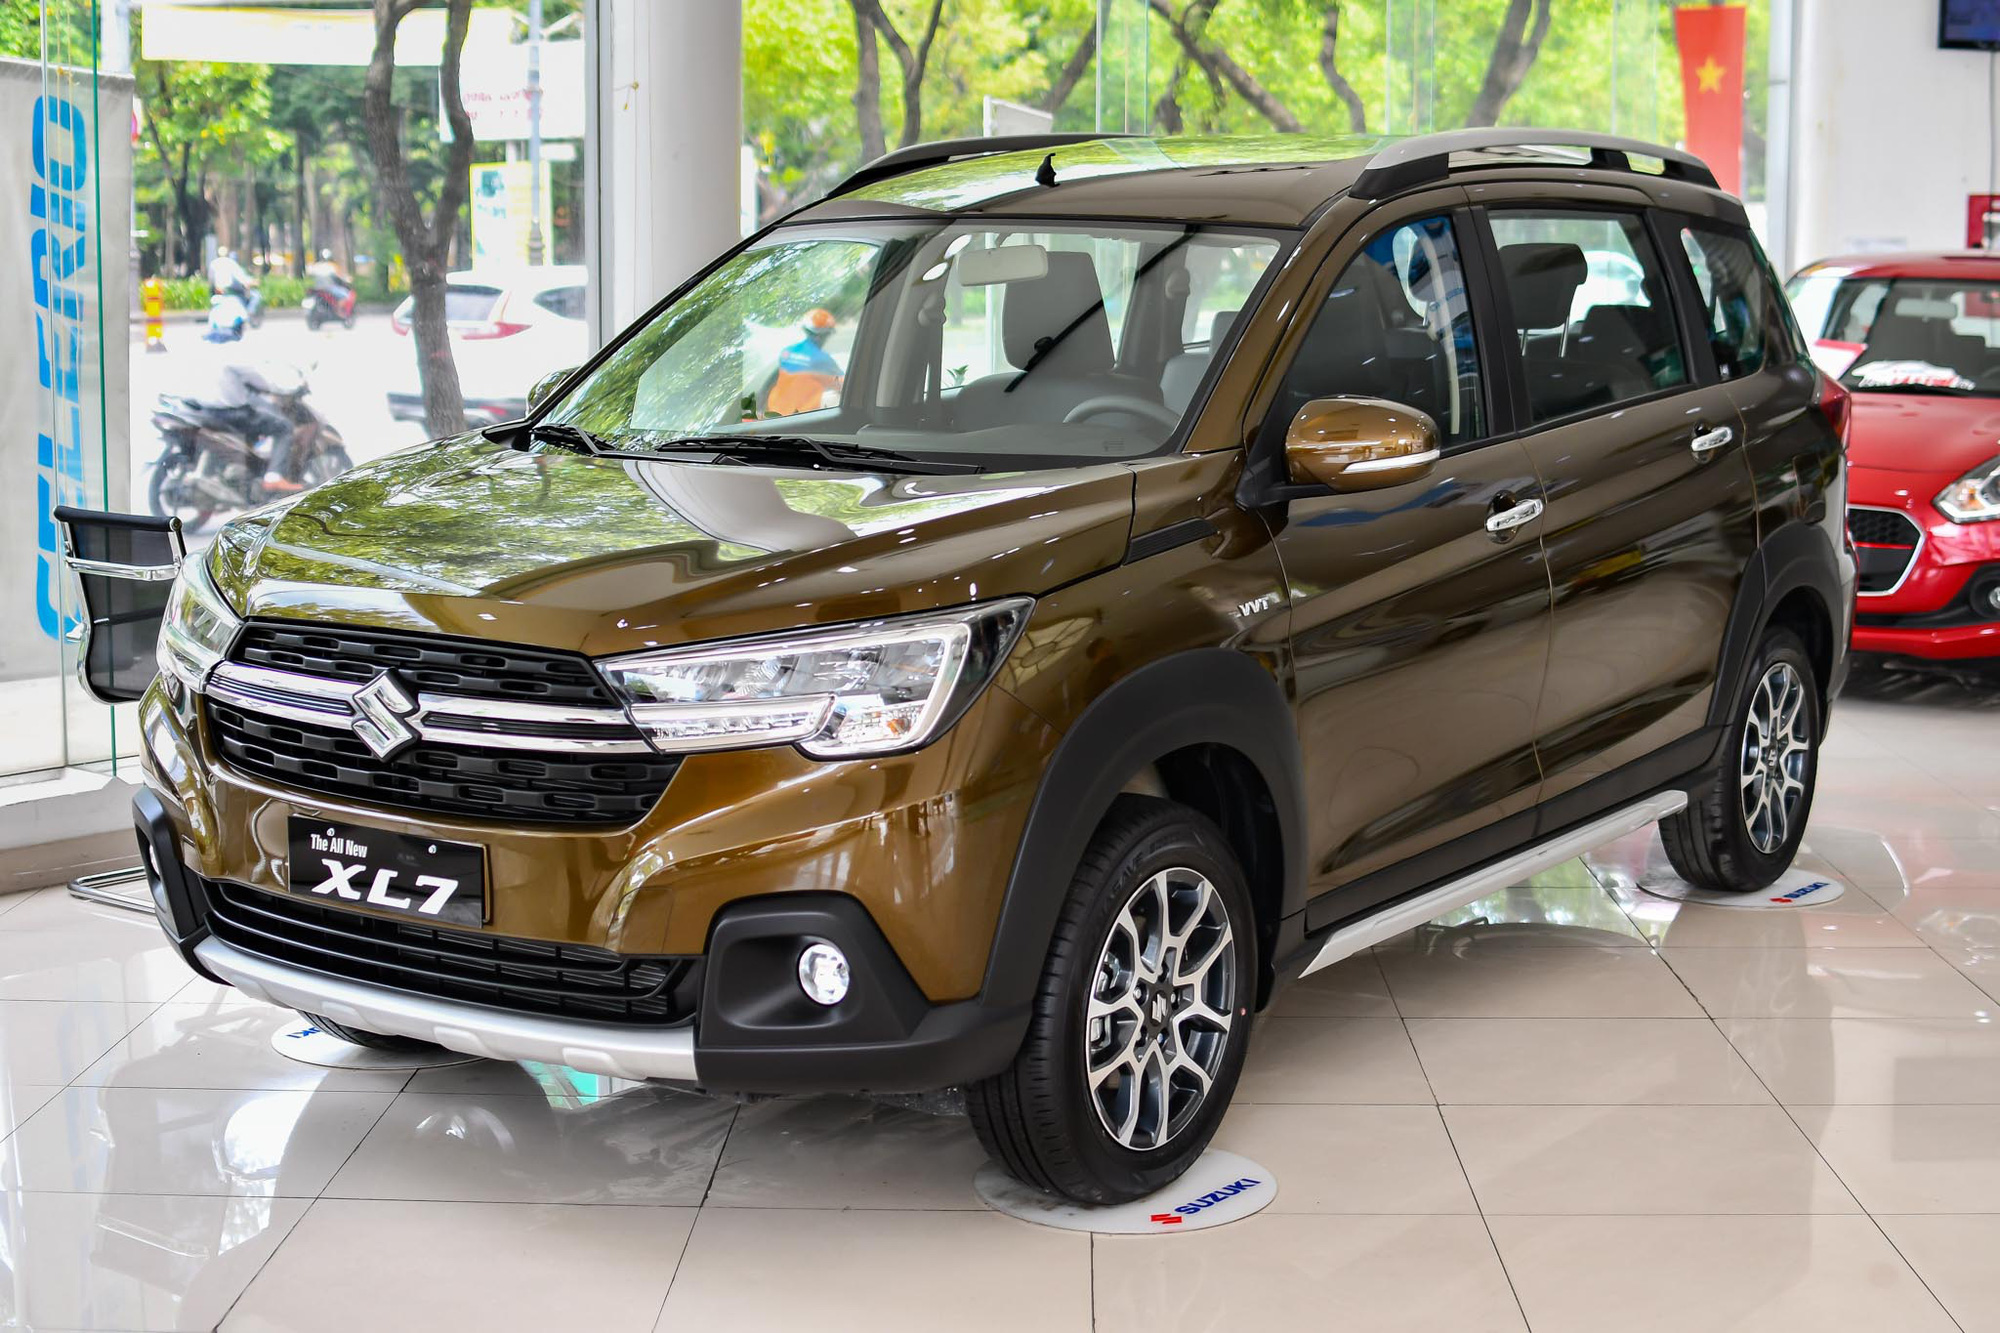 Suzuki XL7 có hiện tượng thấm dầu tại Việt Nam, hãng xe Nhật nói gì? - Ảnh 1.